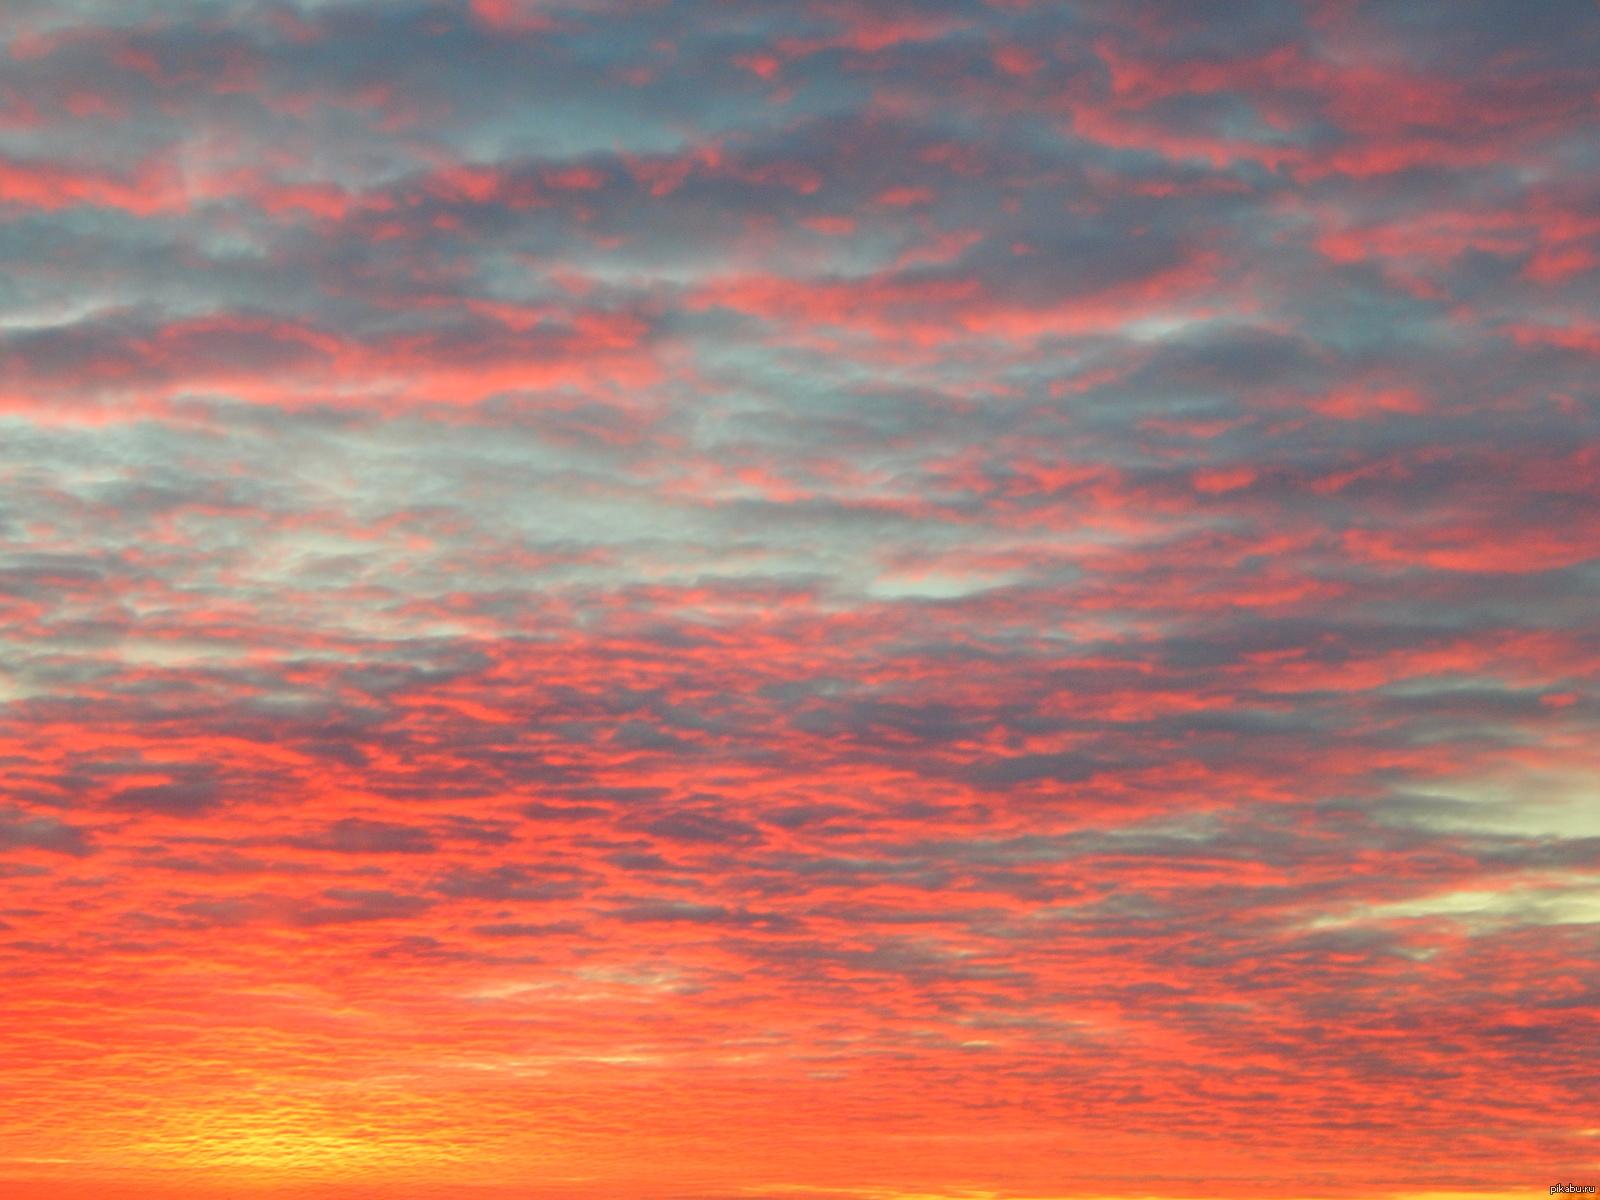 Фото вчерашнего заката солнца...небо словно море лавы с пеплом... | Пикабу